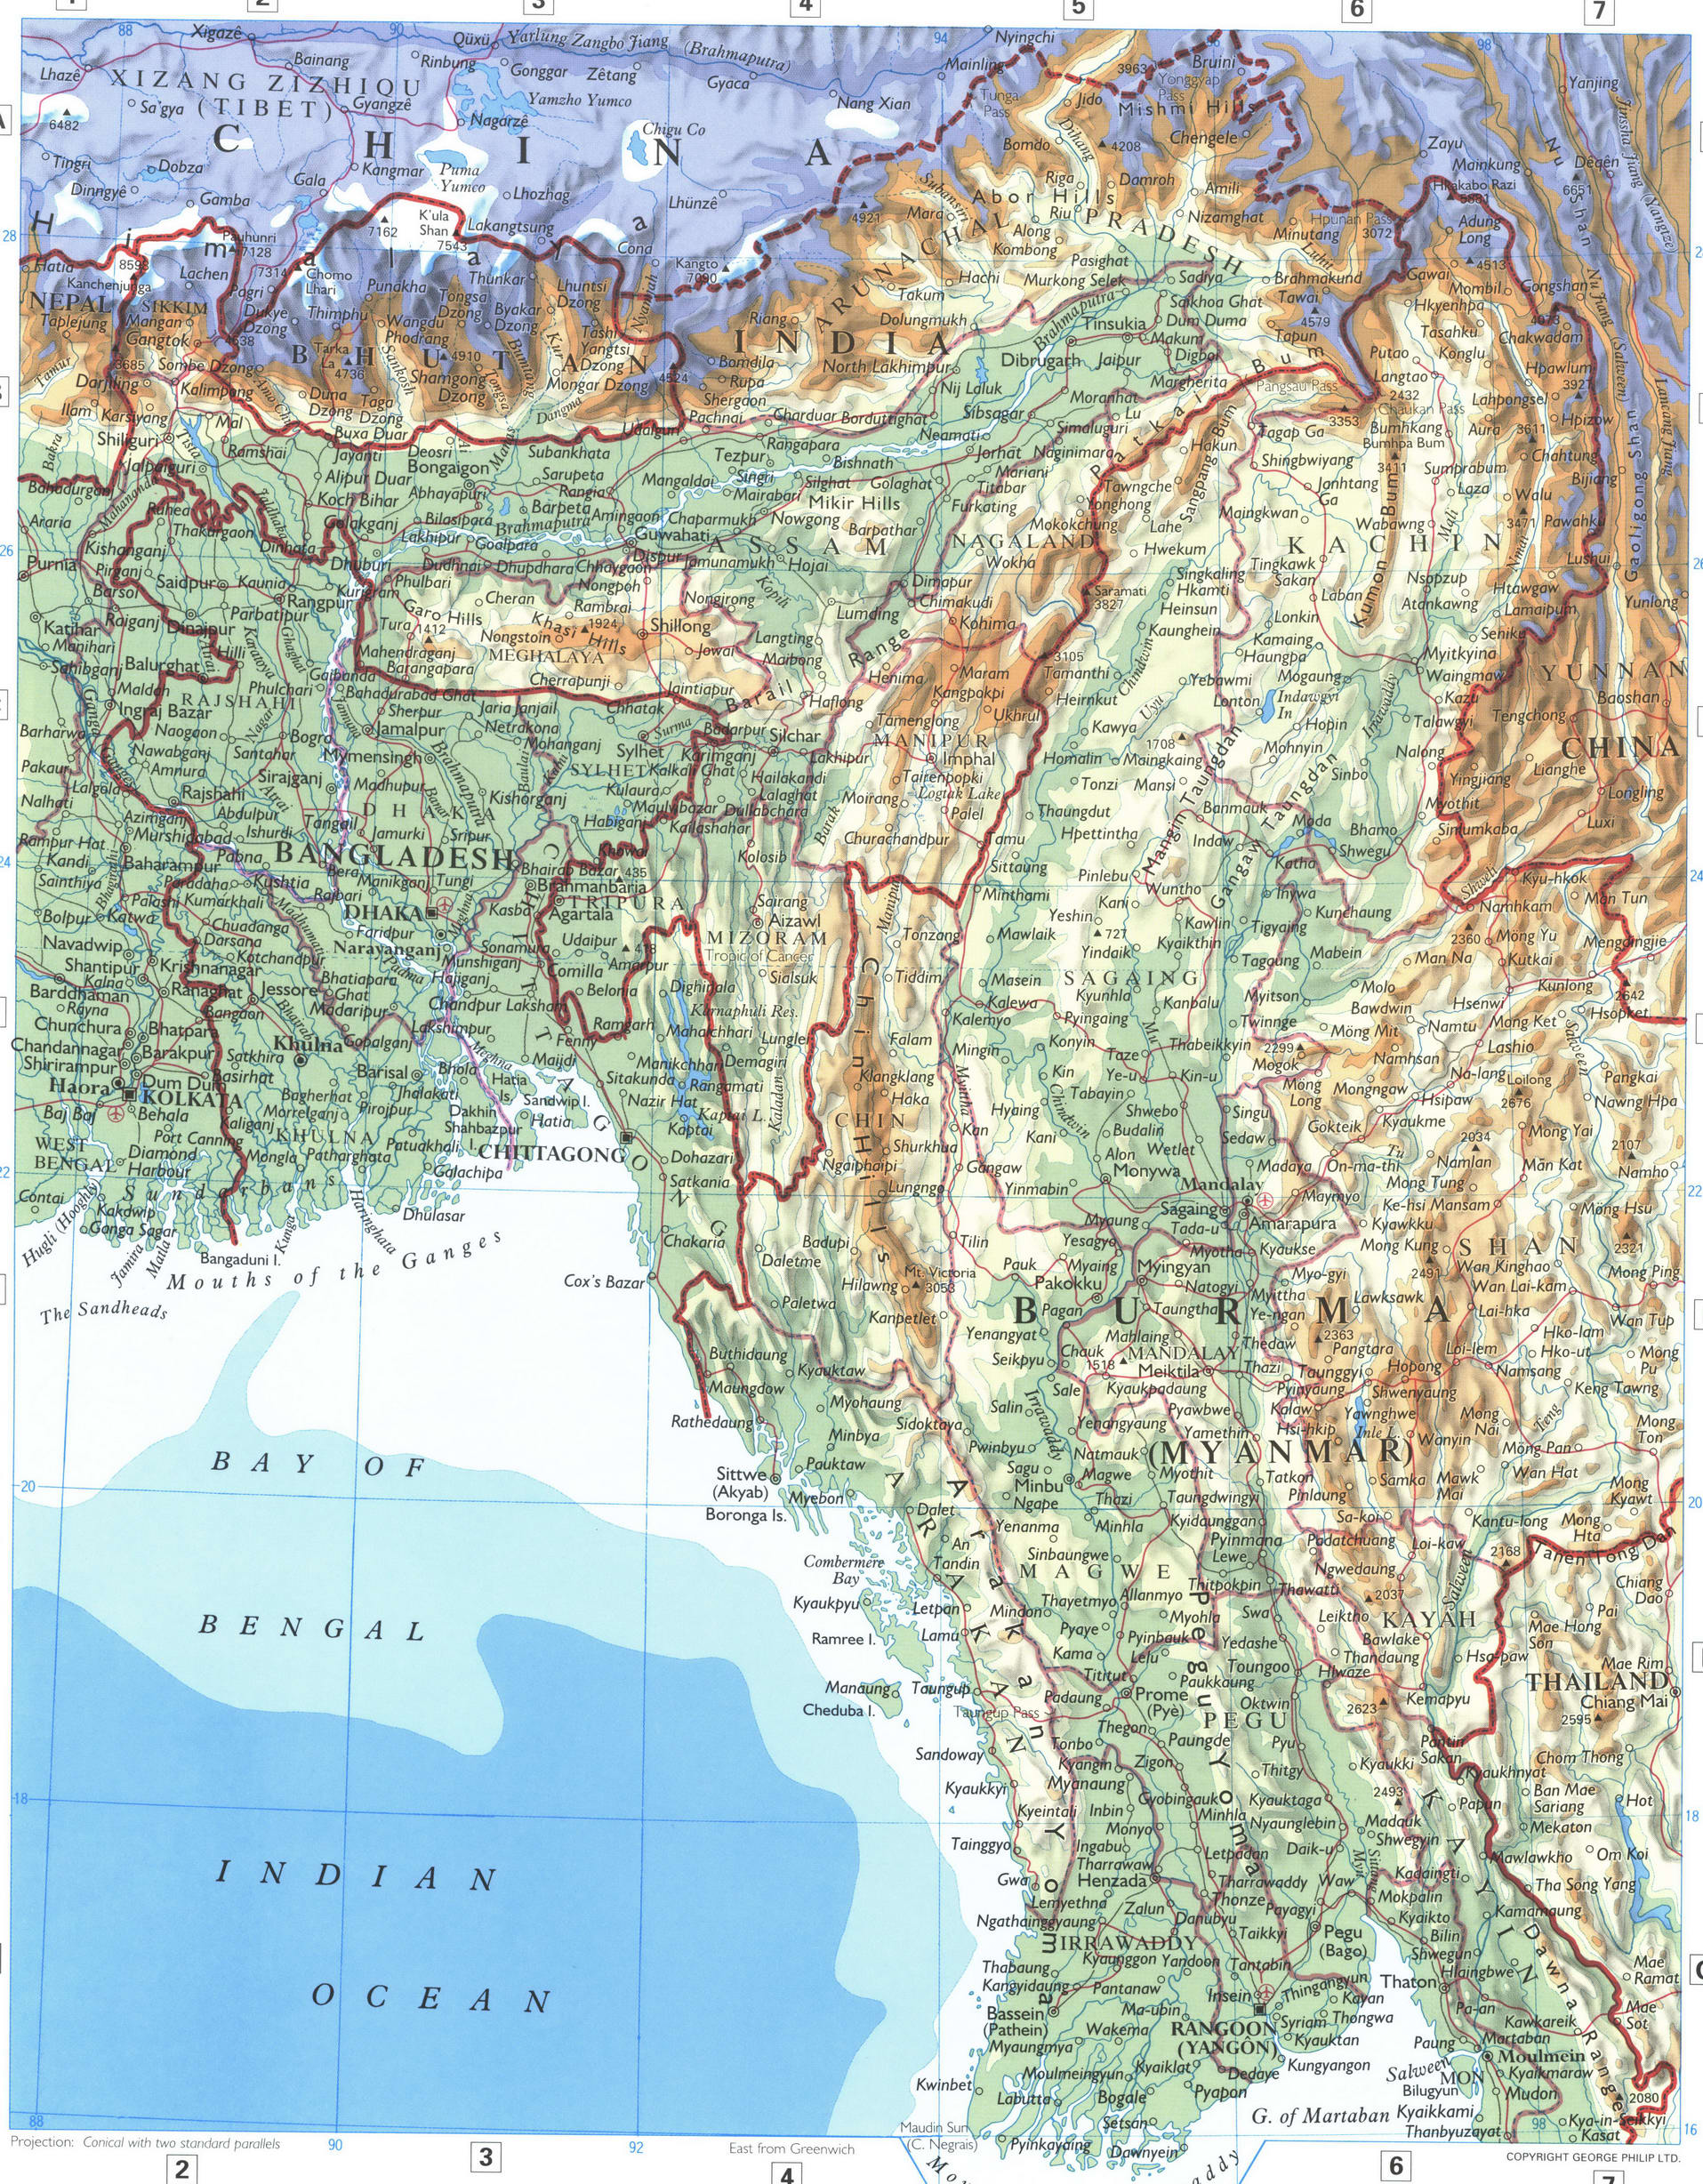 Burma and Bangladesh map